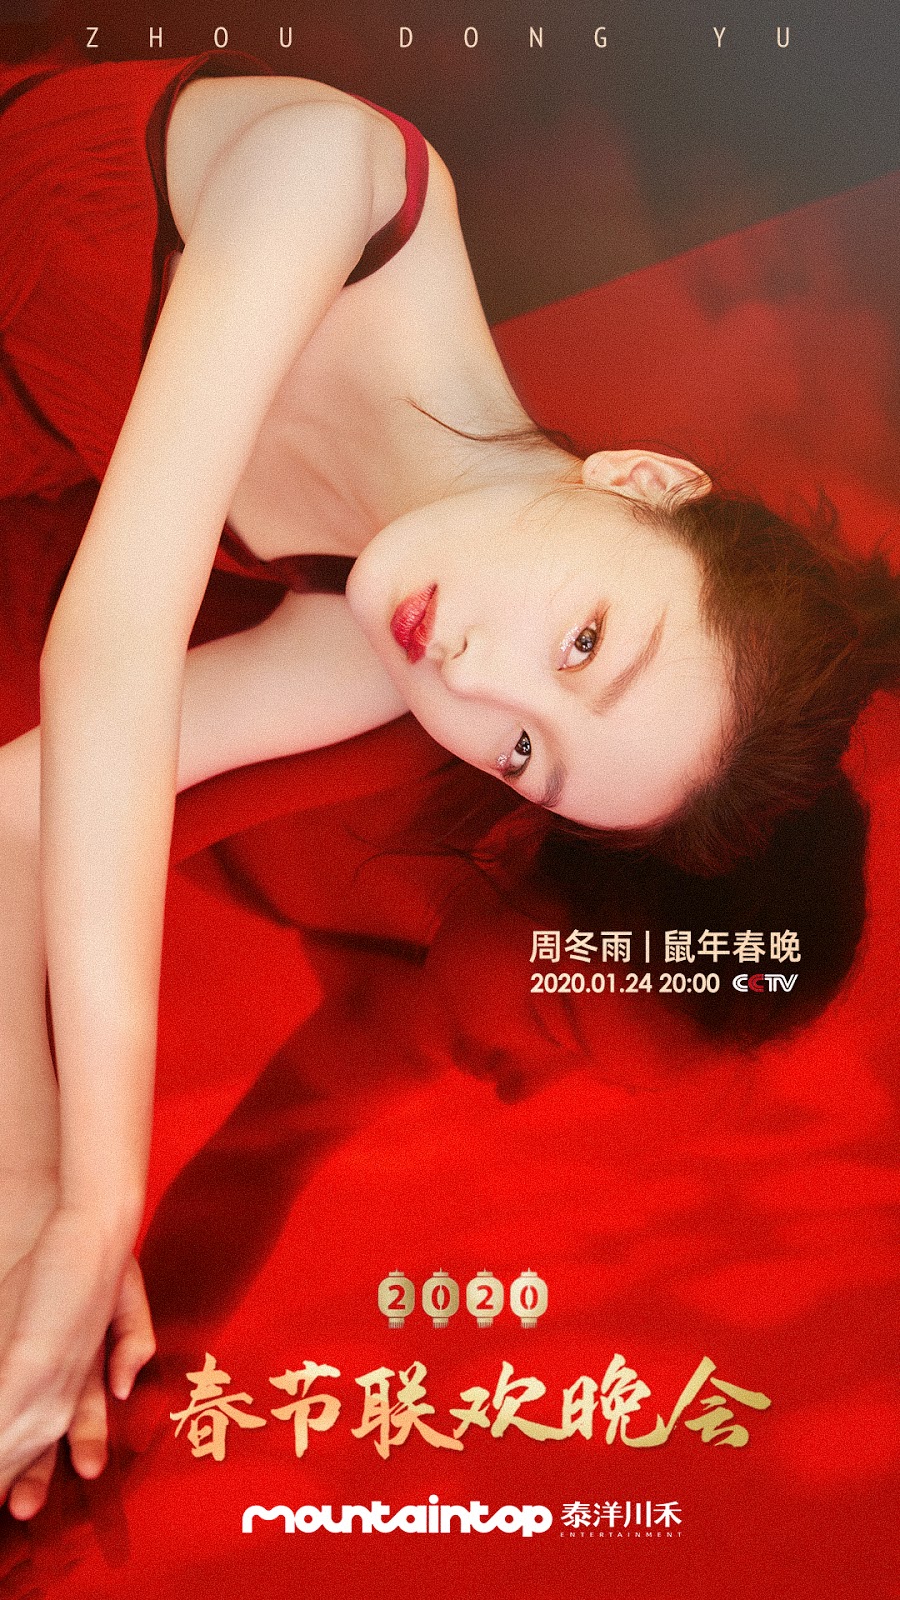 Zhou Dongyu poses for photo shoot - China Underground